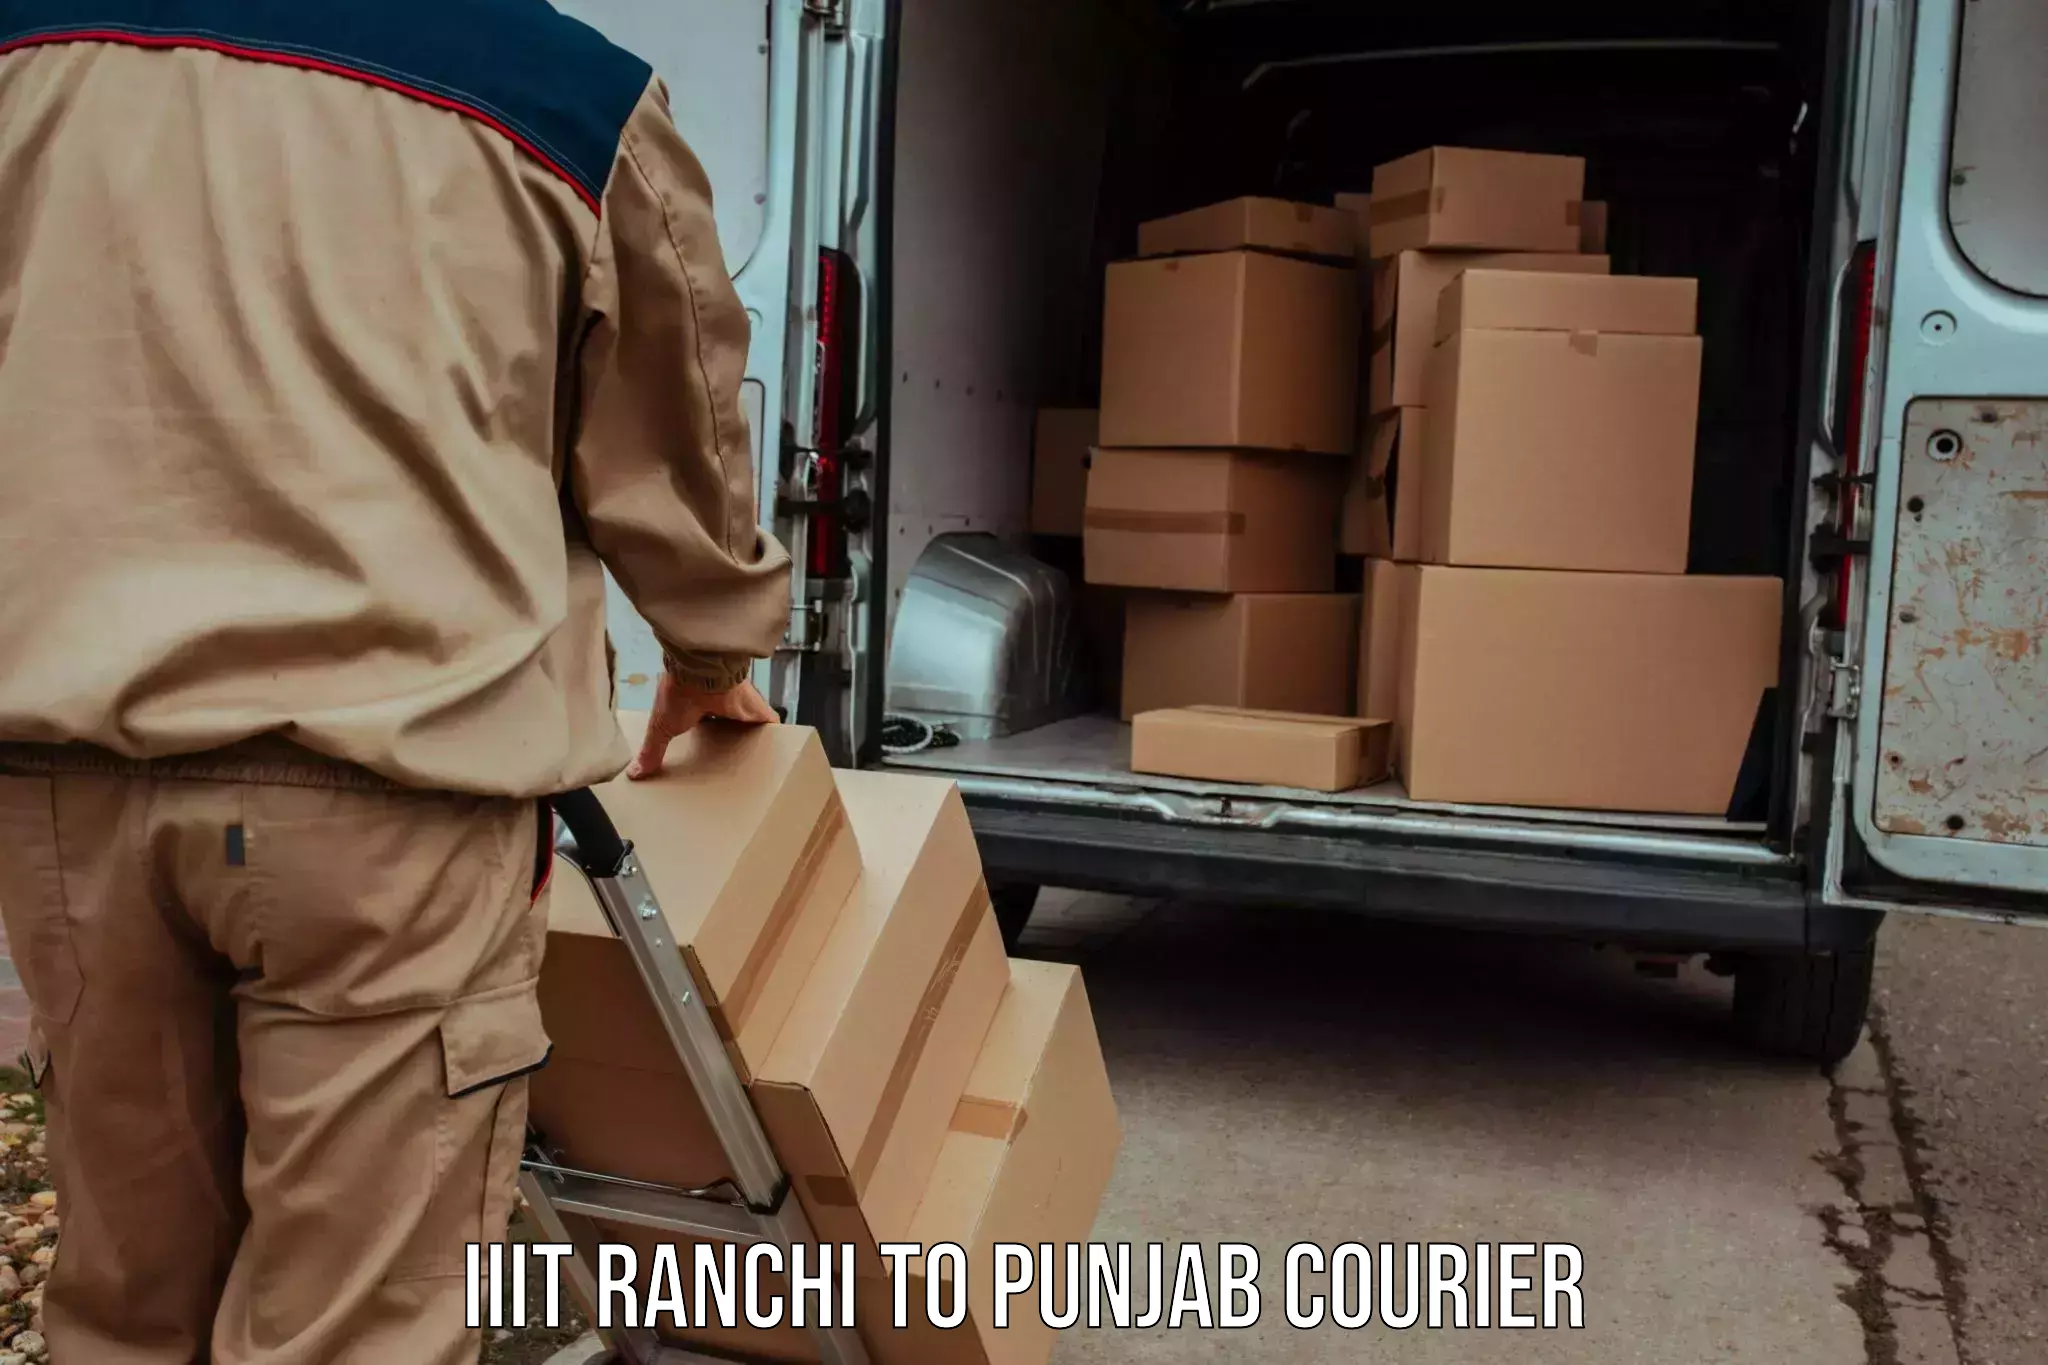 Global shipping solutions IIIT Ranchi to Talwara